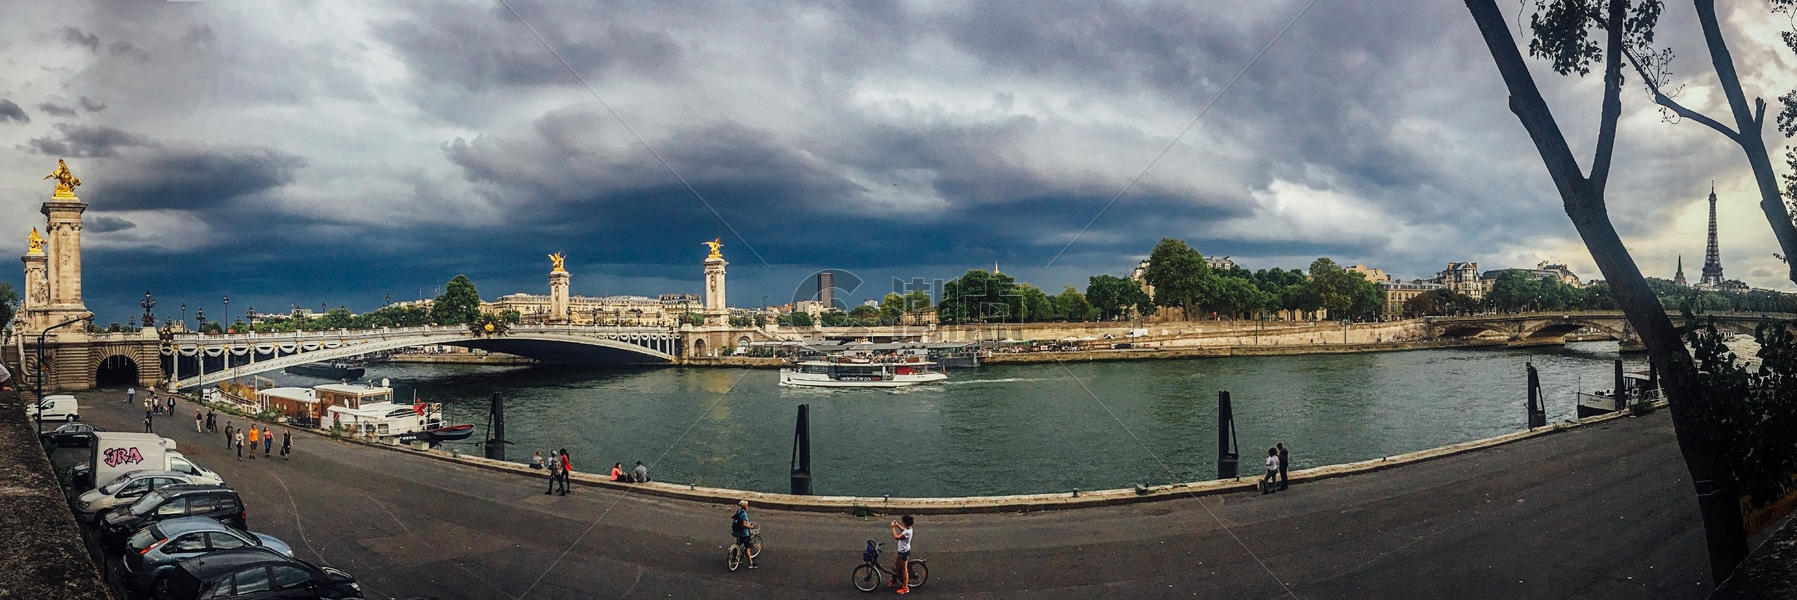 手机拍摄阴云下巴黎亚历山大三世大桥及埃菲尔铁塔全景图片素材免费下载